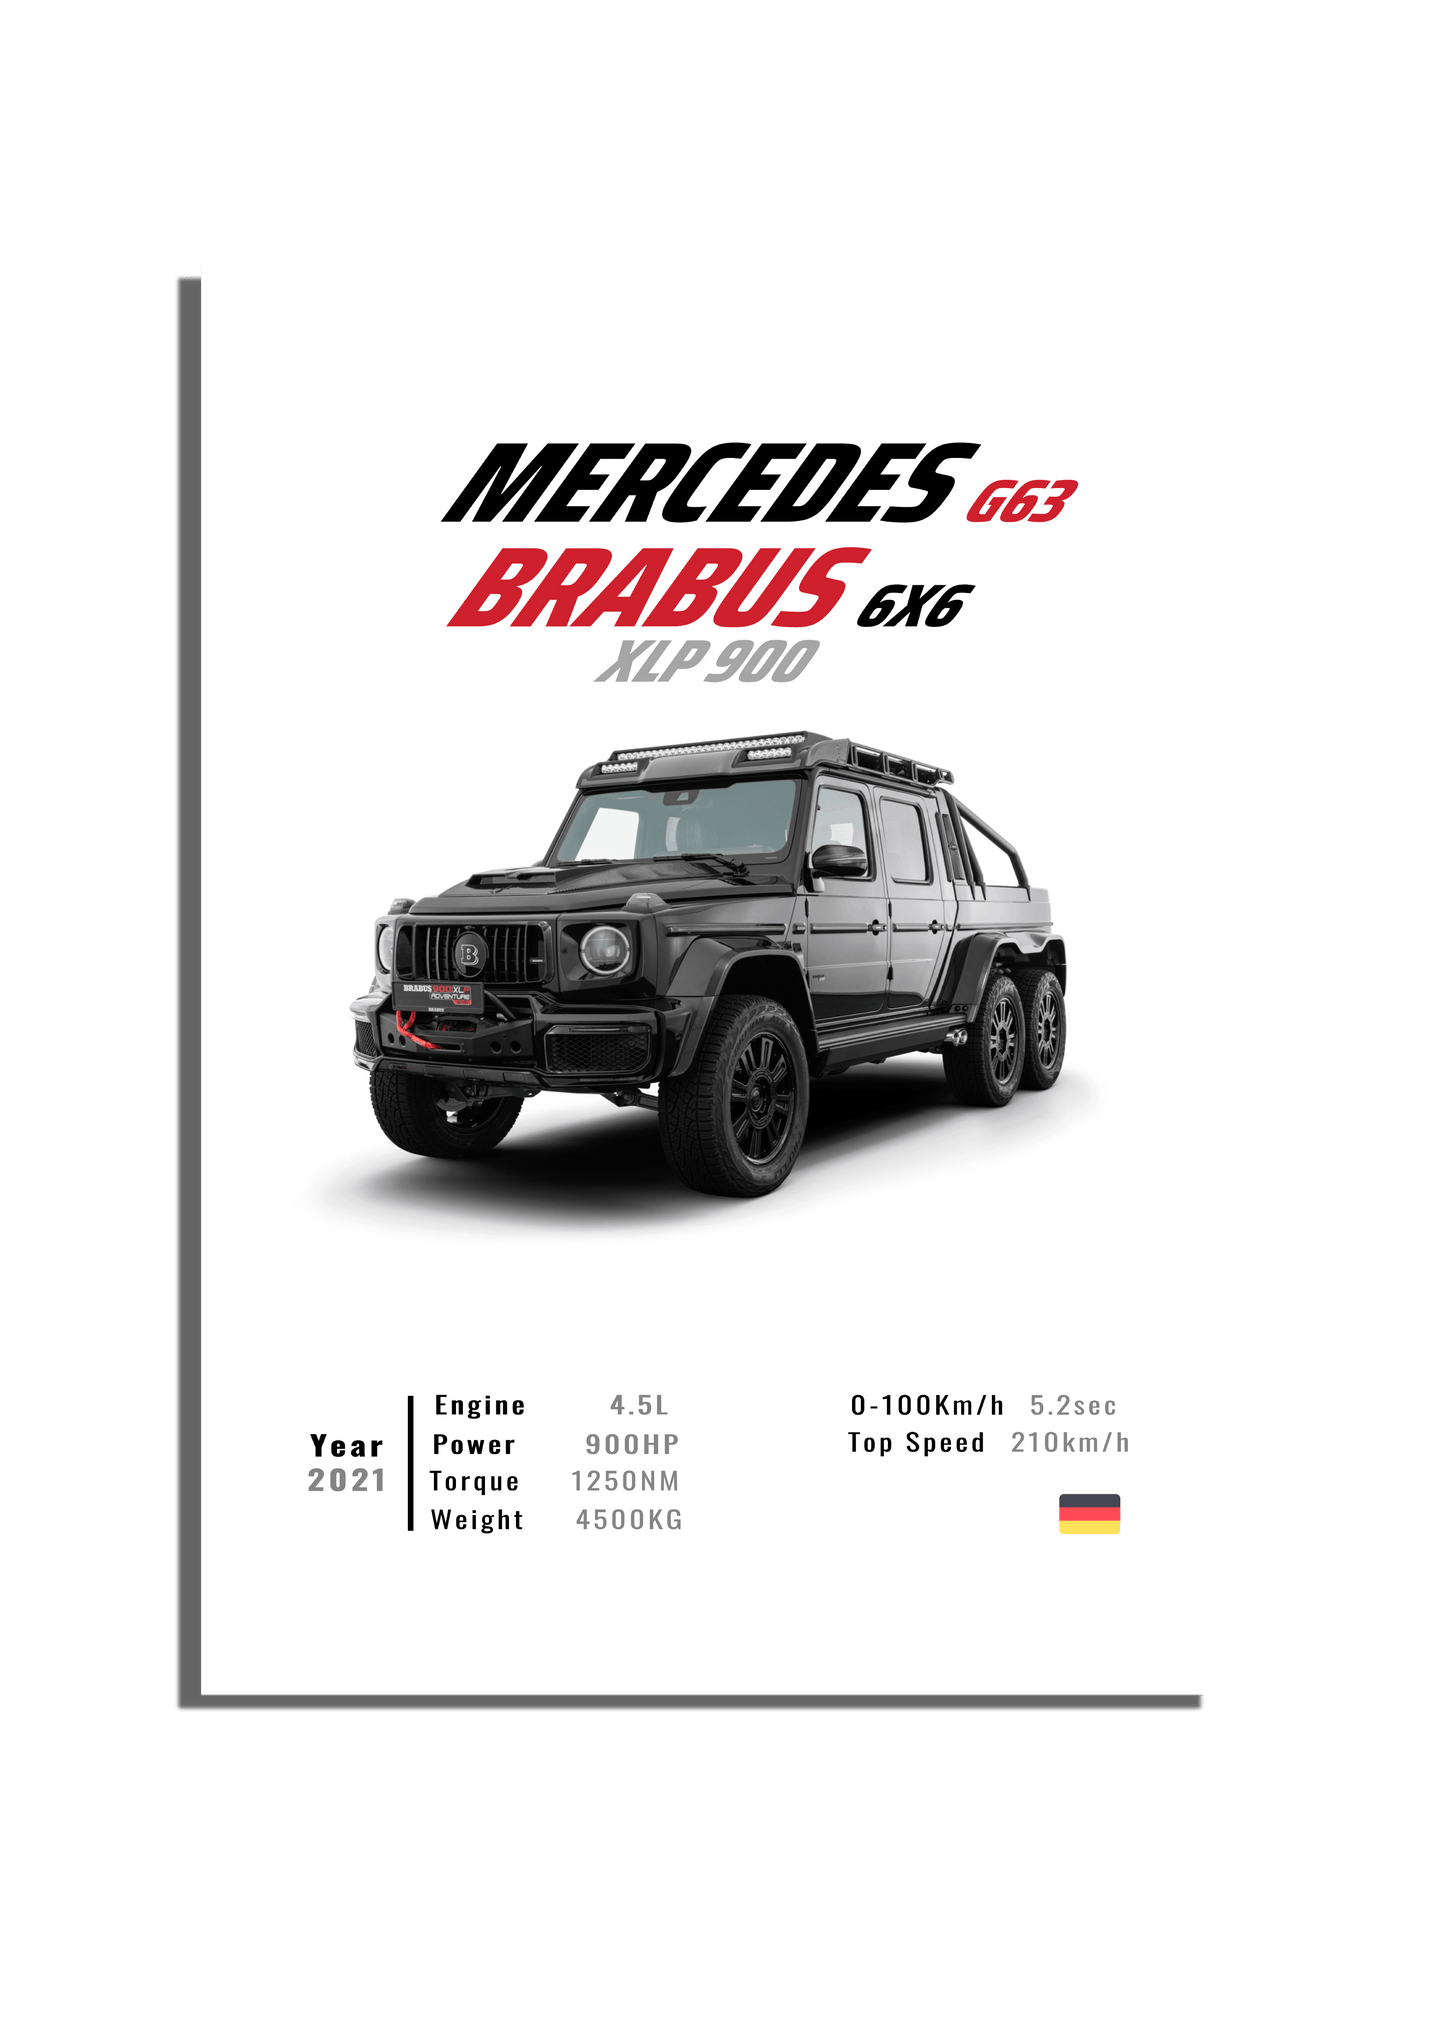 MERCEDES G63 BRABUS 6X6 XLP 900